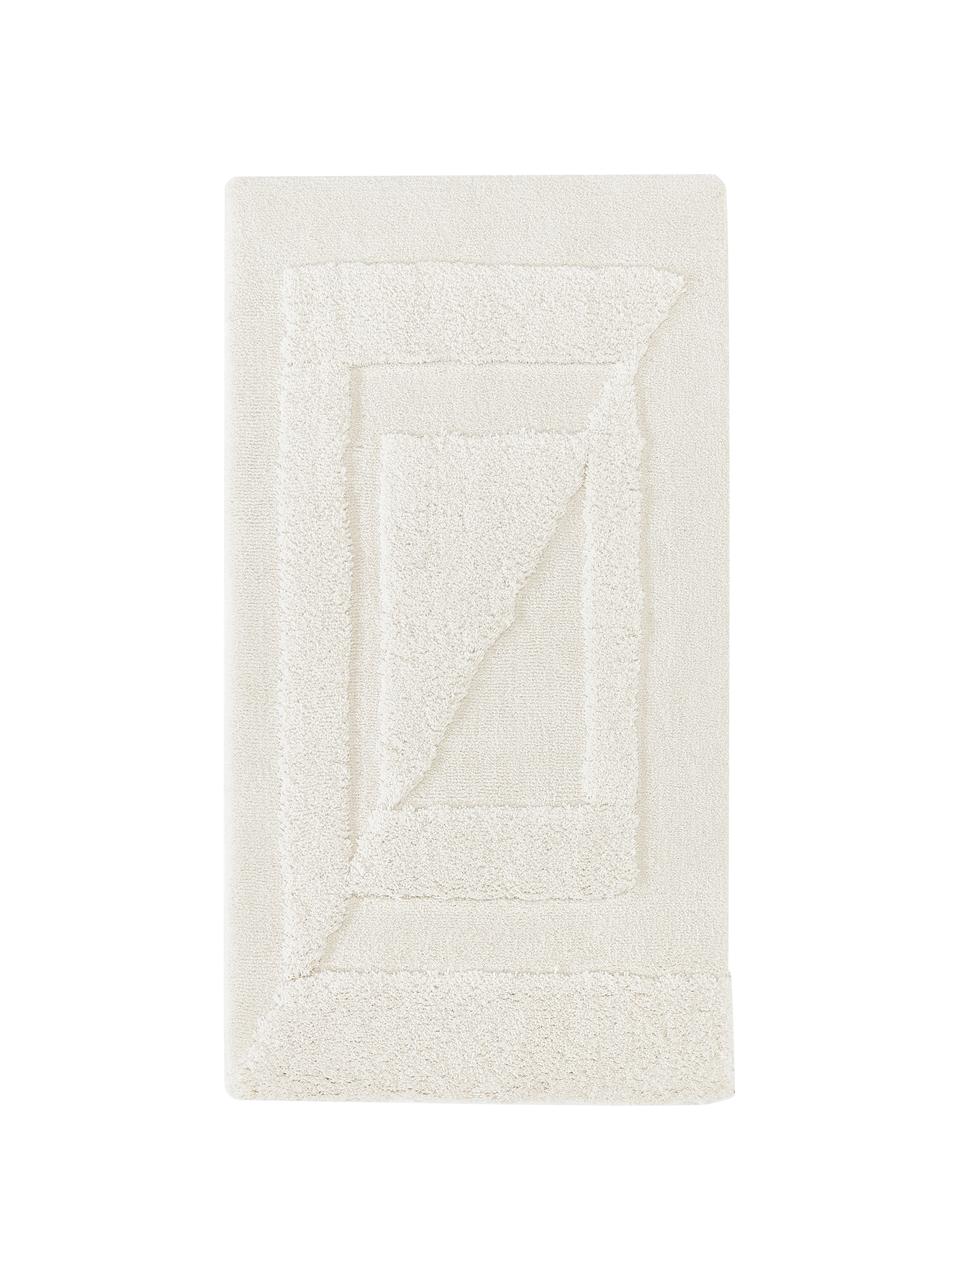 Tappeto soffice a pelo lungo con struttura alta-bassa Zion, Bianco crema, Larg. 120 x Lung. 180 cm (taglia S)